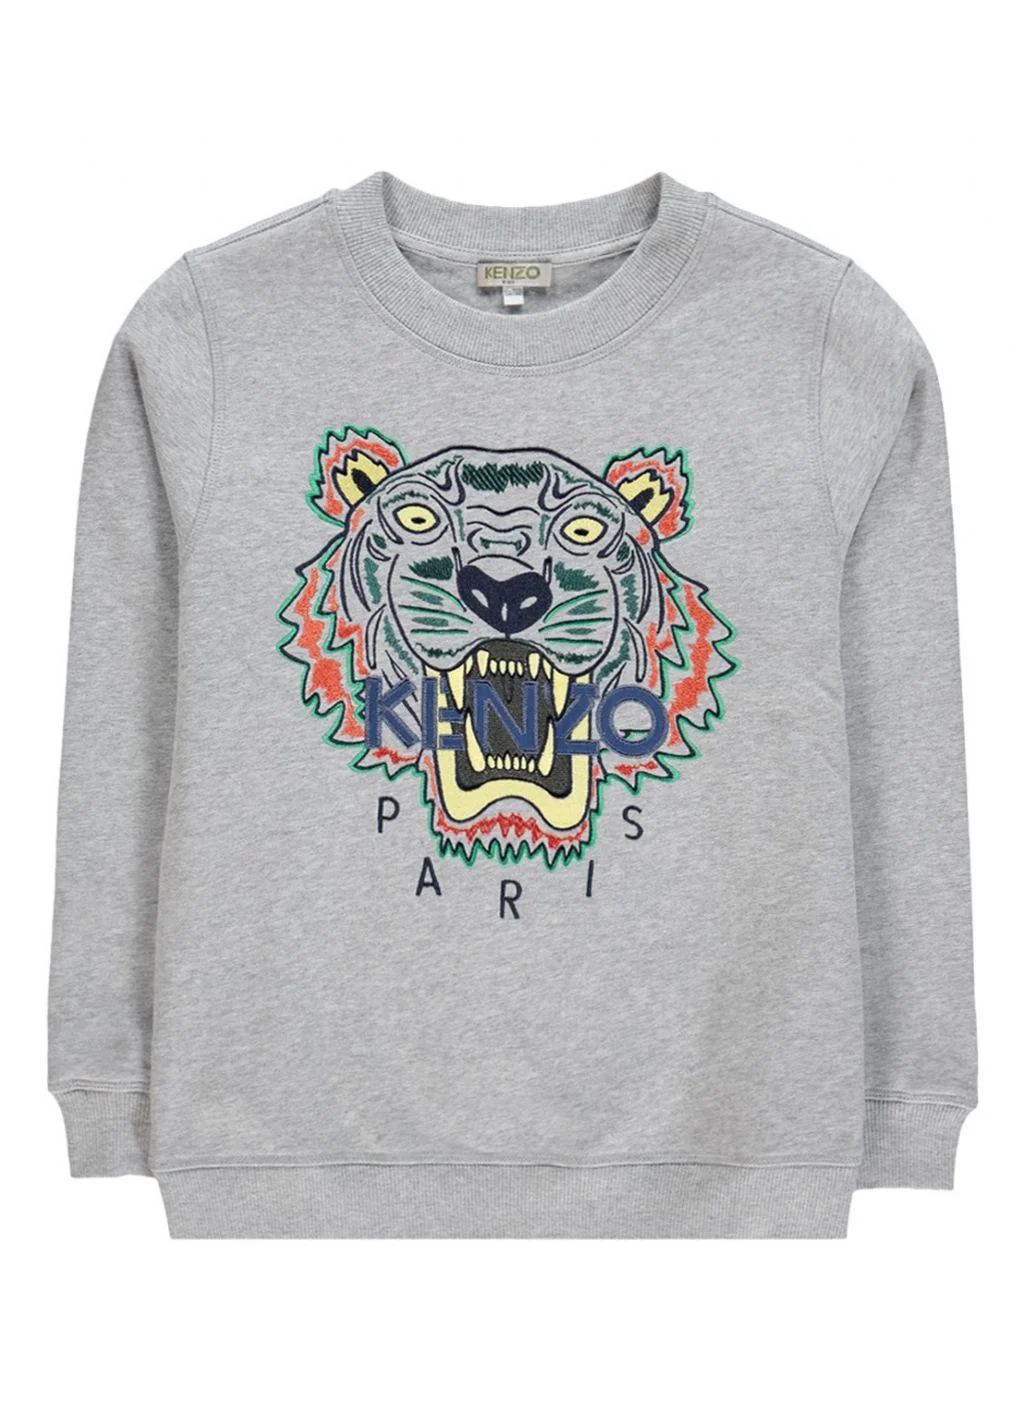 Zee Verfrissend liefdadigheid Mode Musthaves | De Kenzo look-a-like sweater van Wibra!